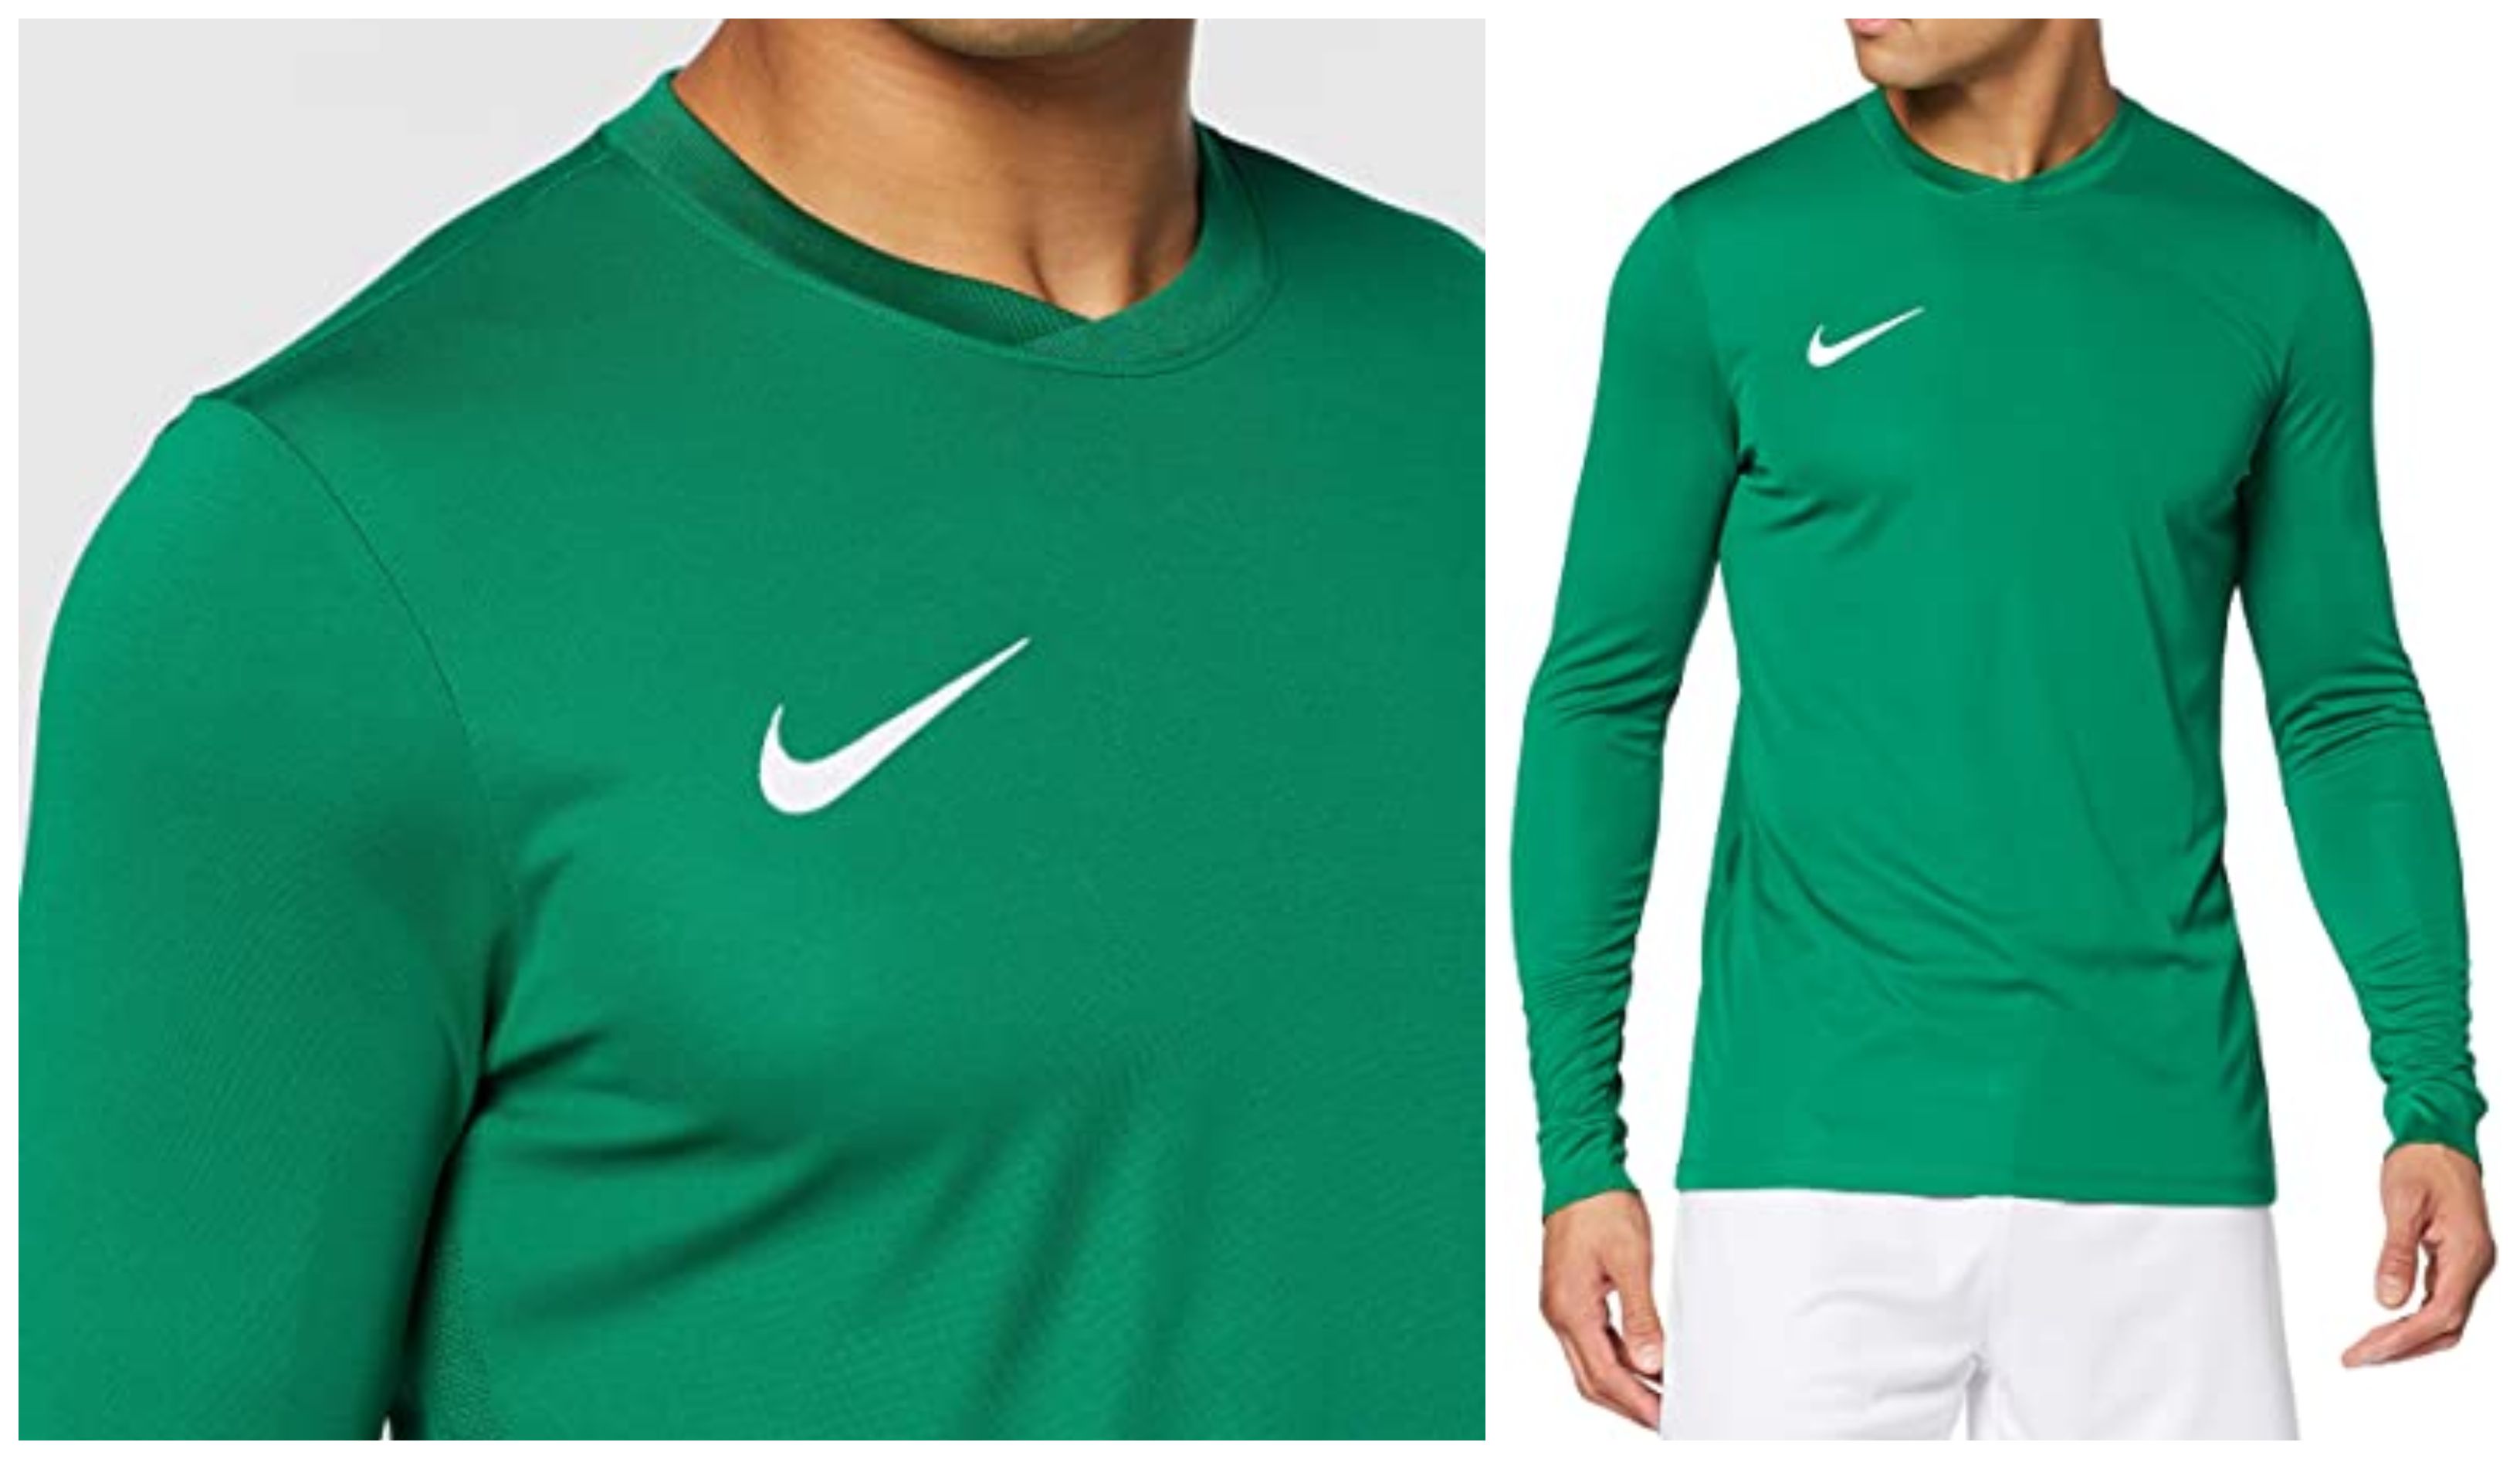 Nike triunfa con esta camiseta de manga larga de